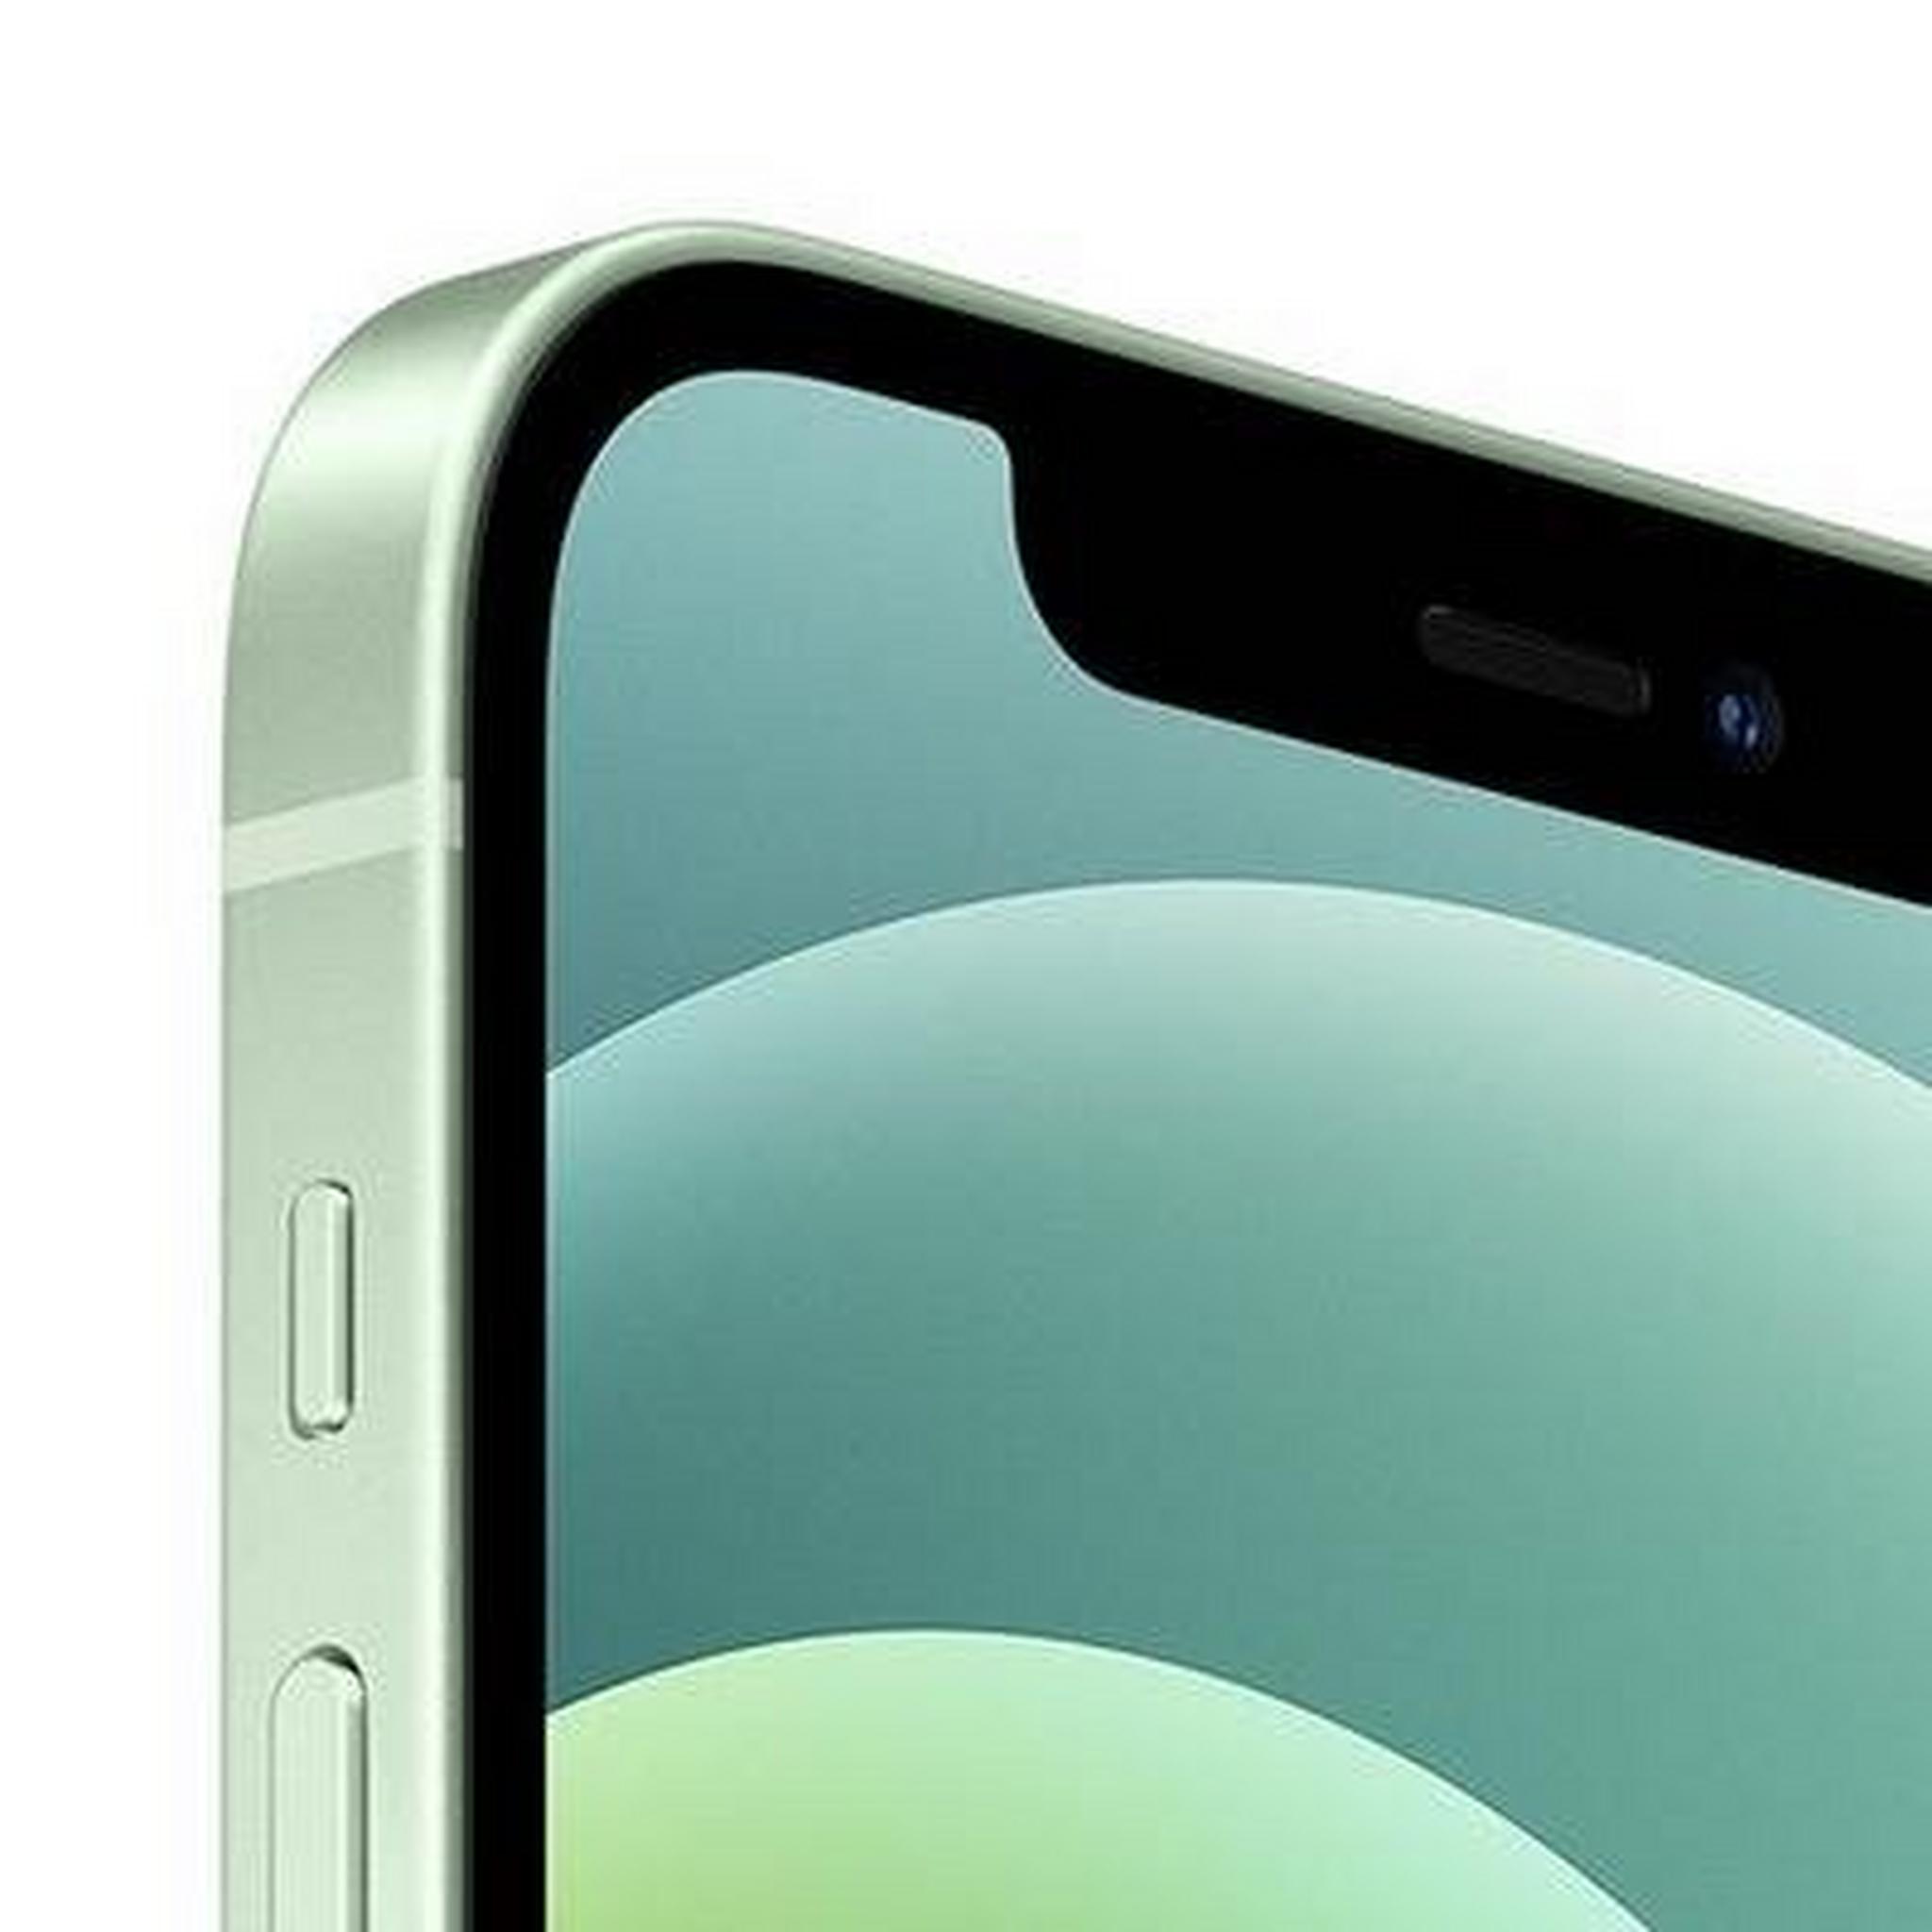 Apple iPhone 12 mini  256GB - Green